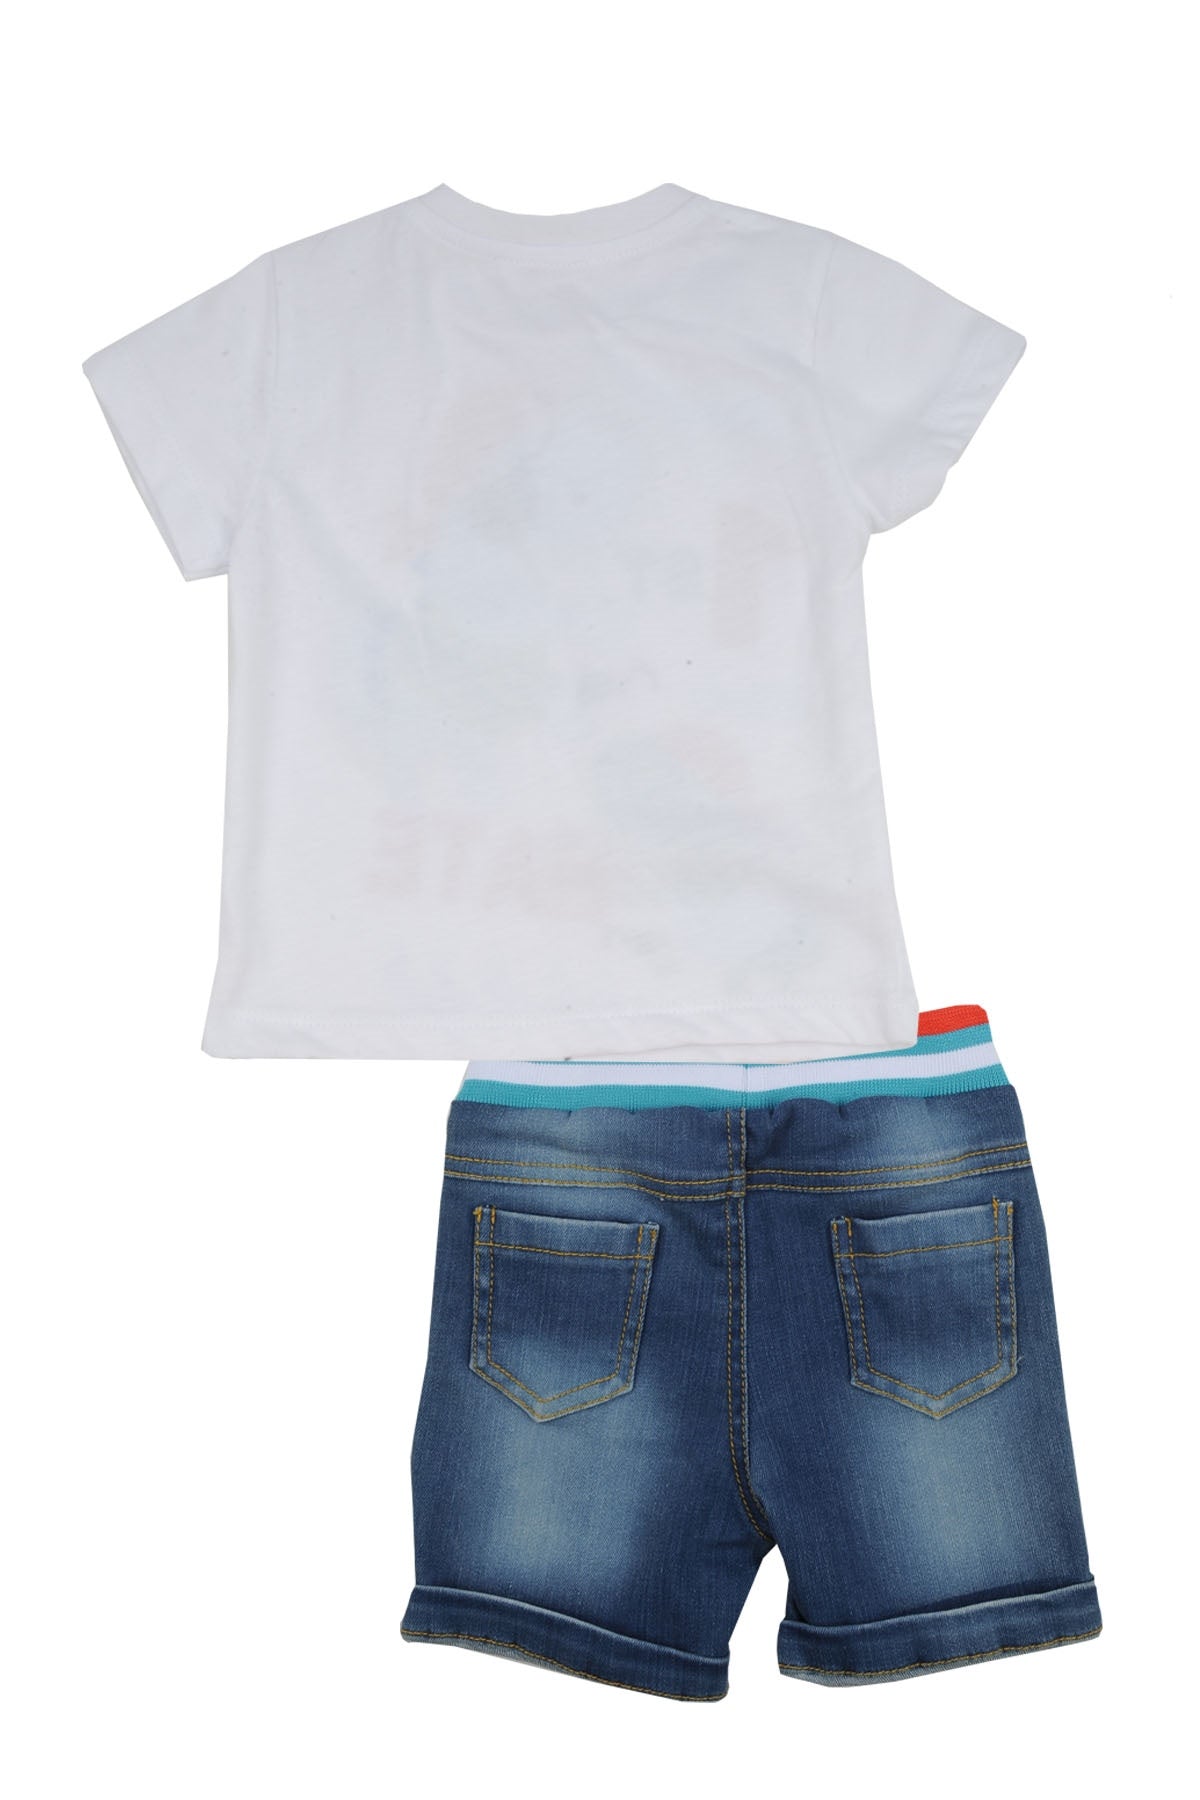 Erkek Bebek Mavi Baskılı T-Shirt ve Kot Şort Takım (6ay-4yaş)-1